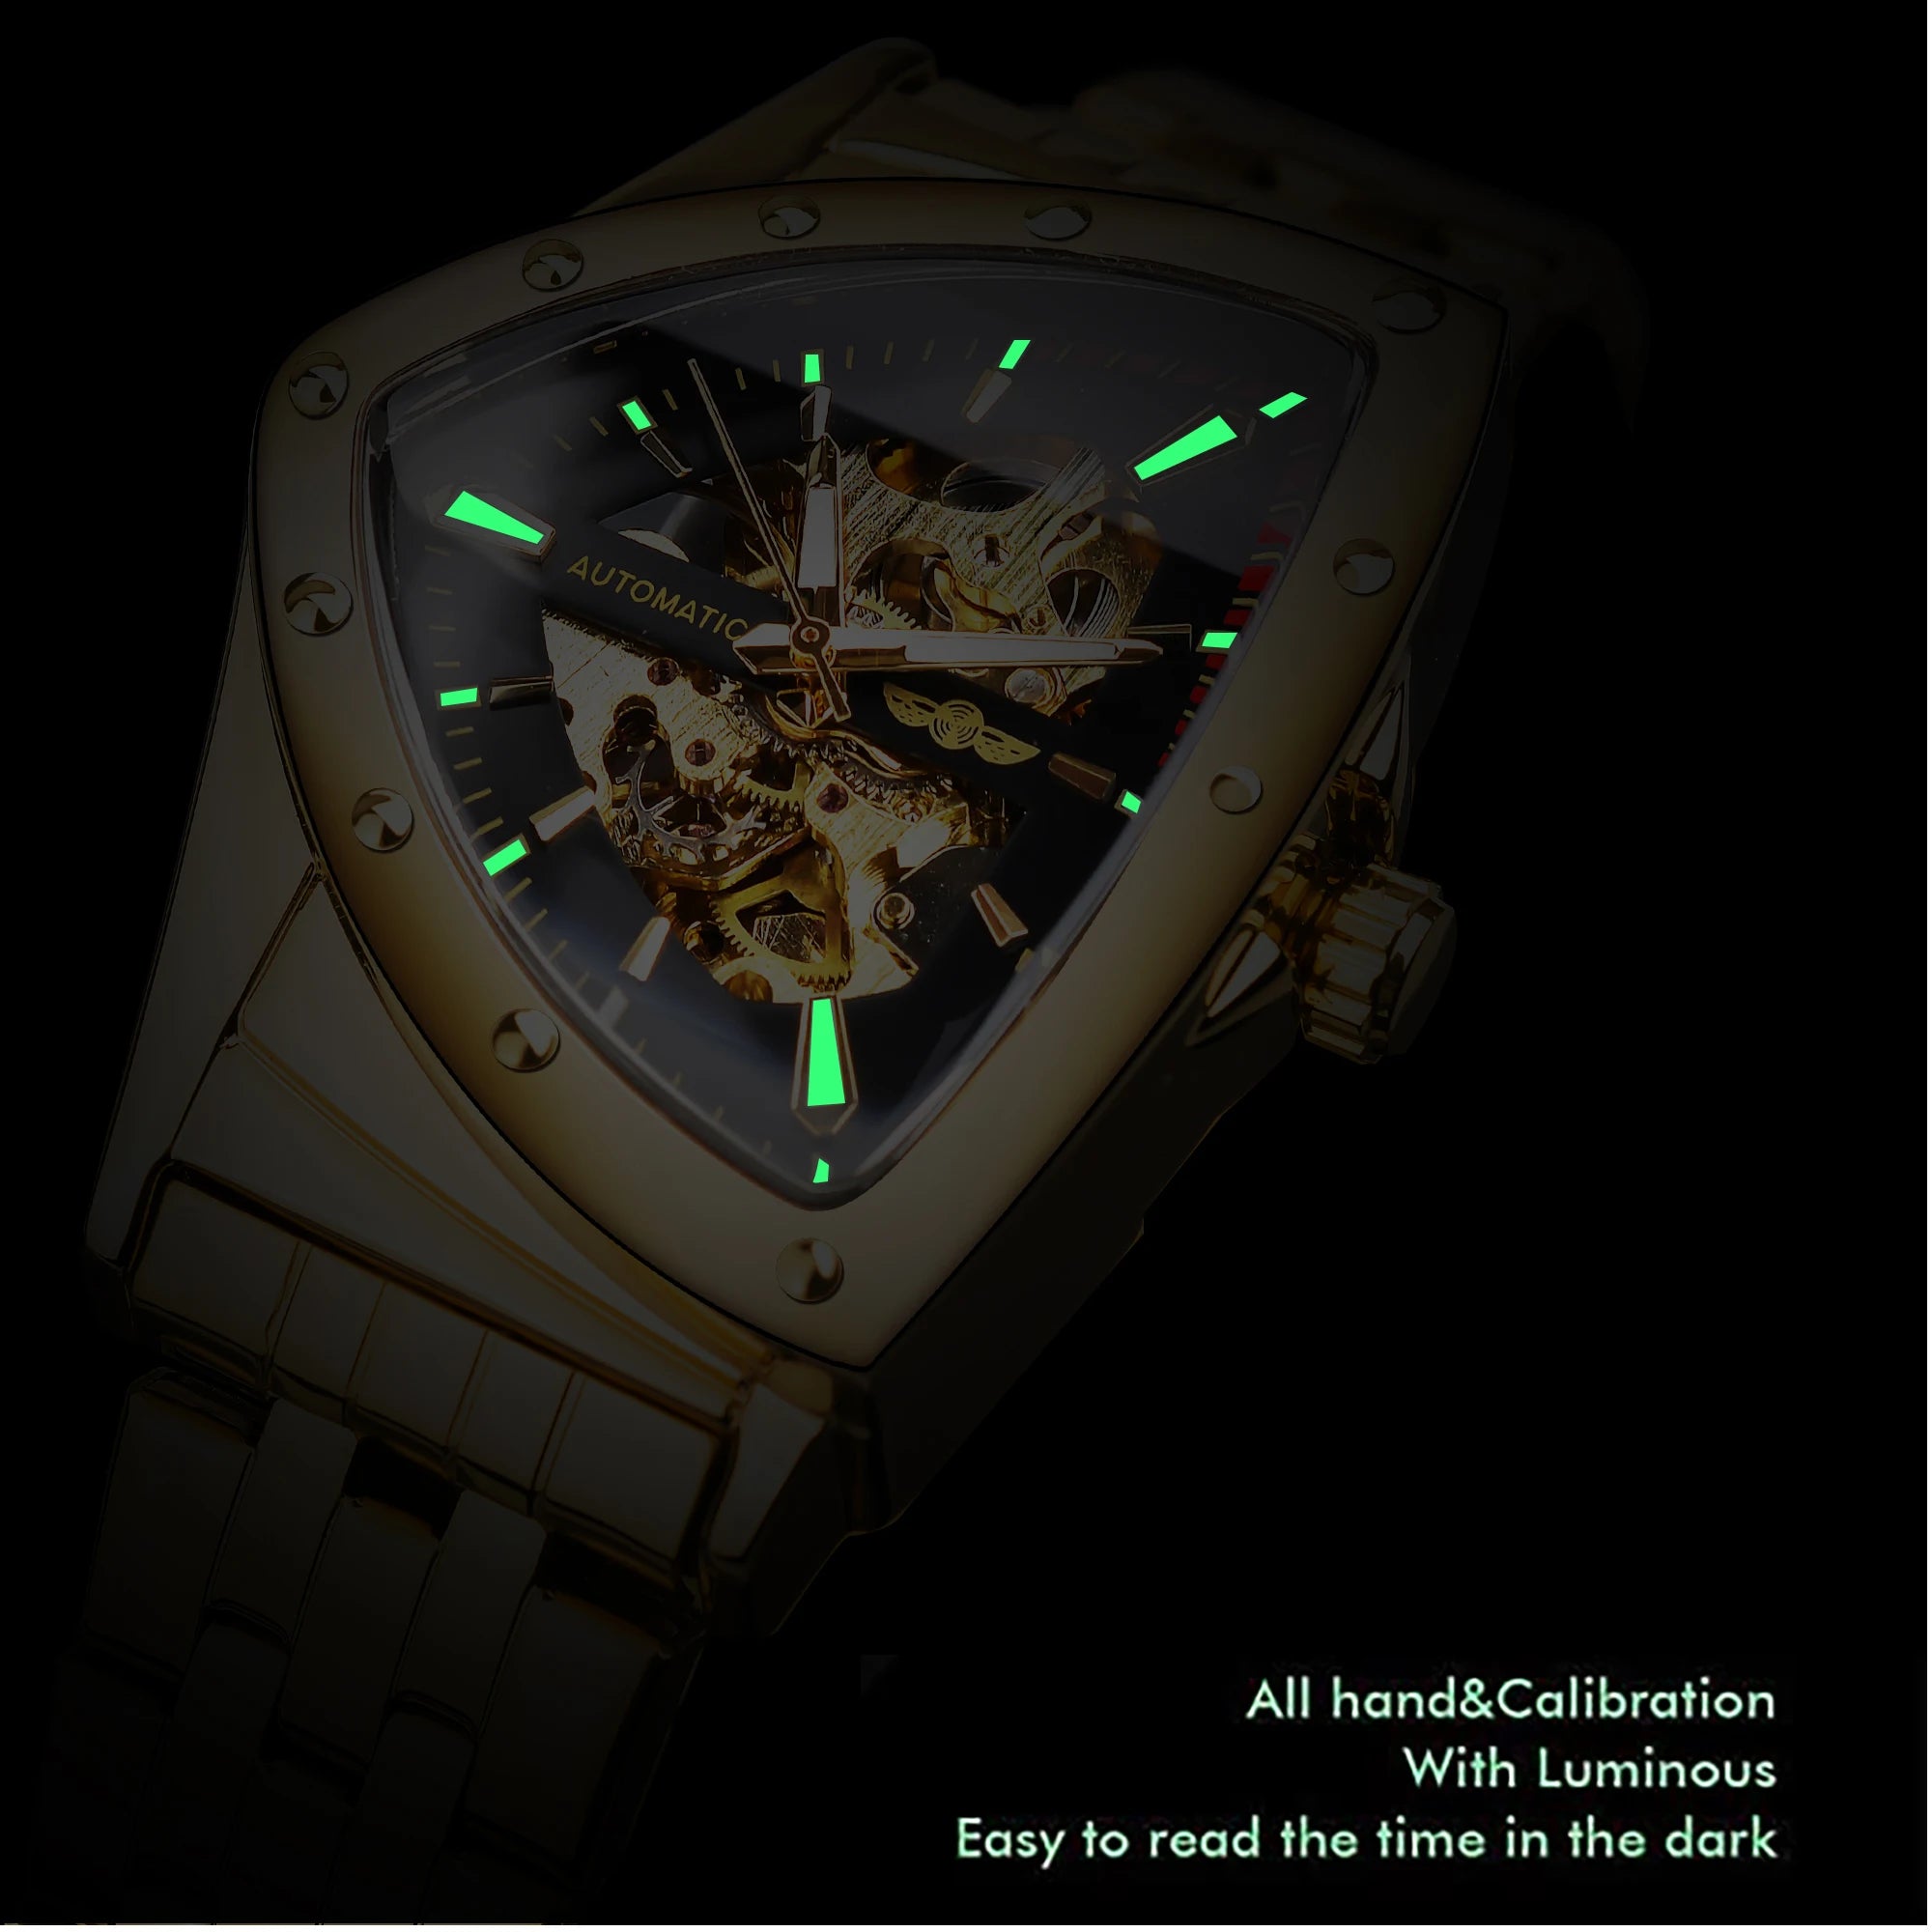 ساعة وينر الذهبية المصنوعة من الفولاذ المقاوم للصدأ Steampunk بتصميم سويسري للرجال على شكل مثلث وهيكل عظمي وساعات ميكانيكية أوتوماتيكية شفافة للرجال